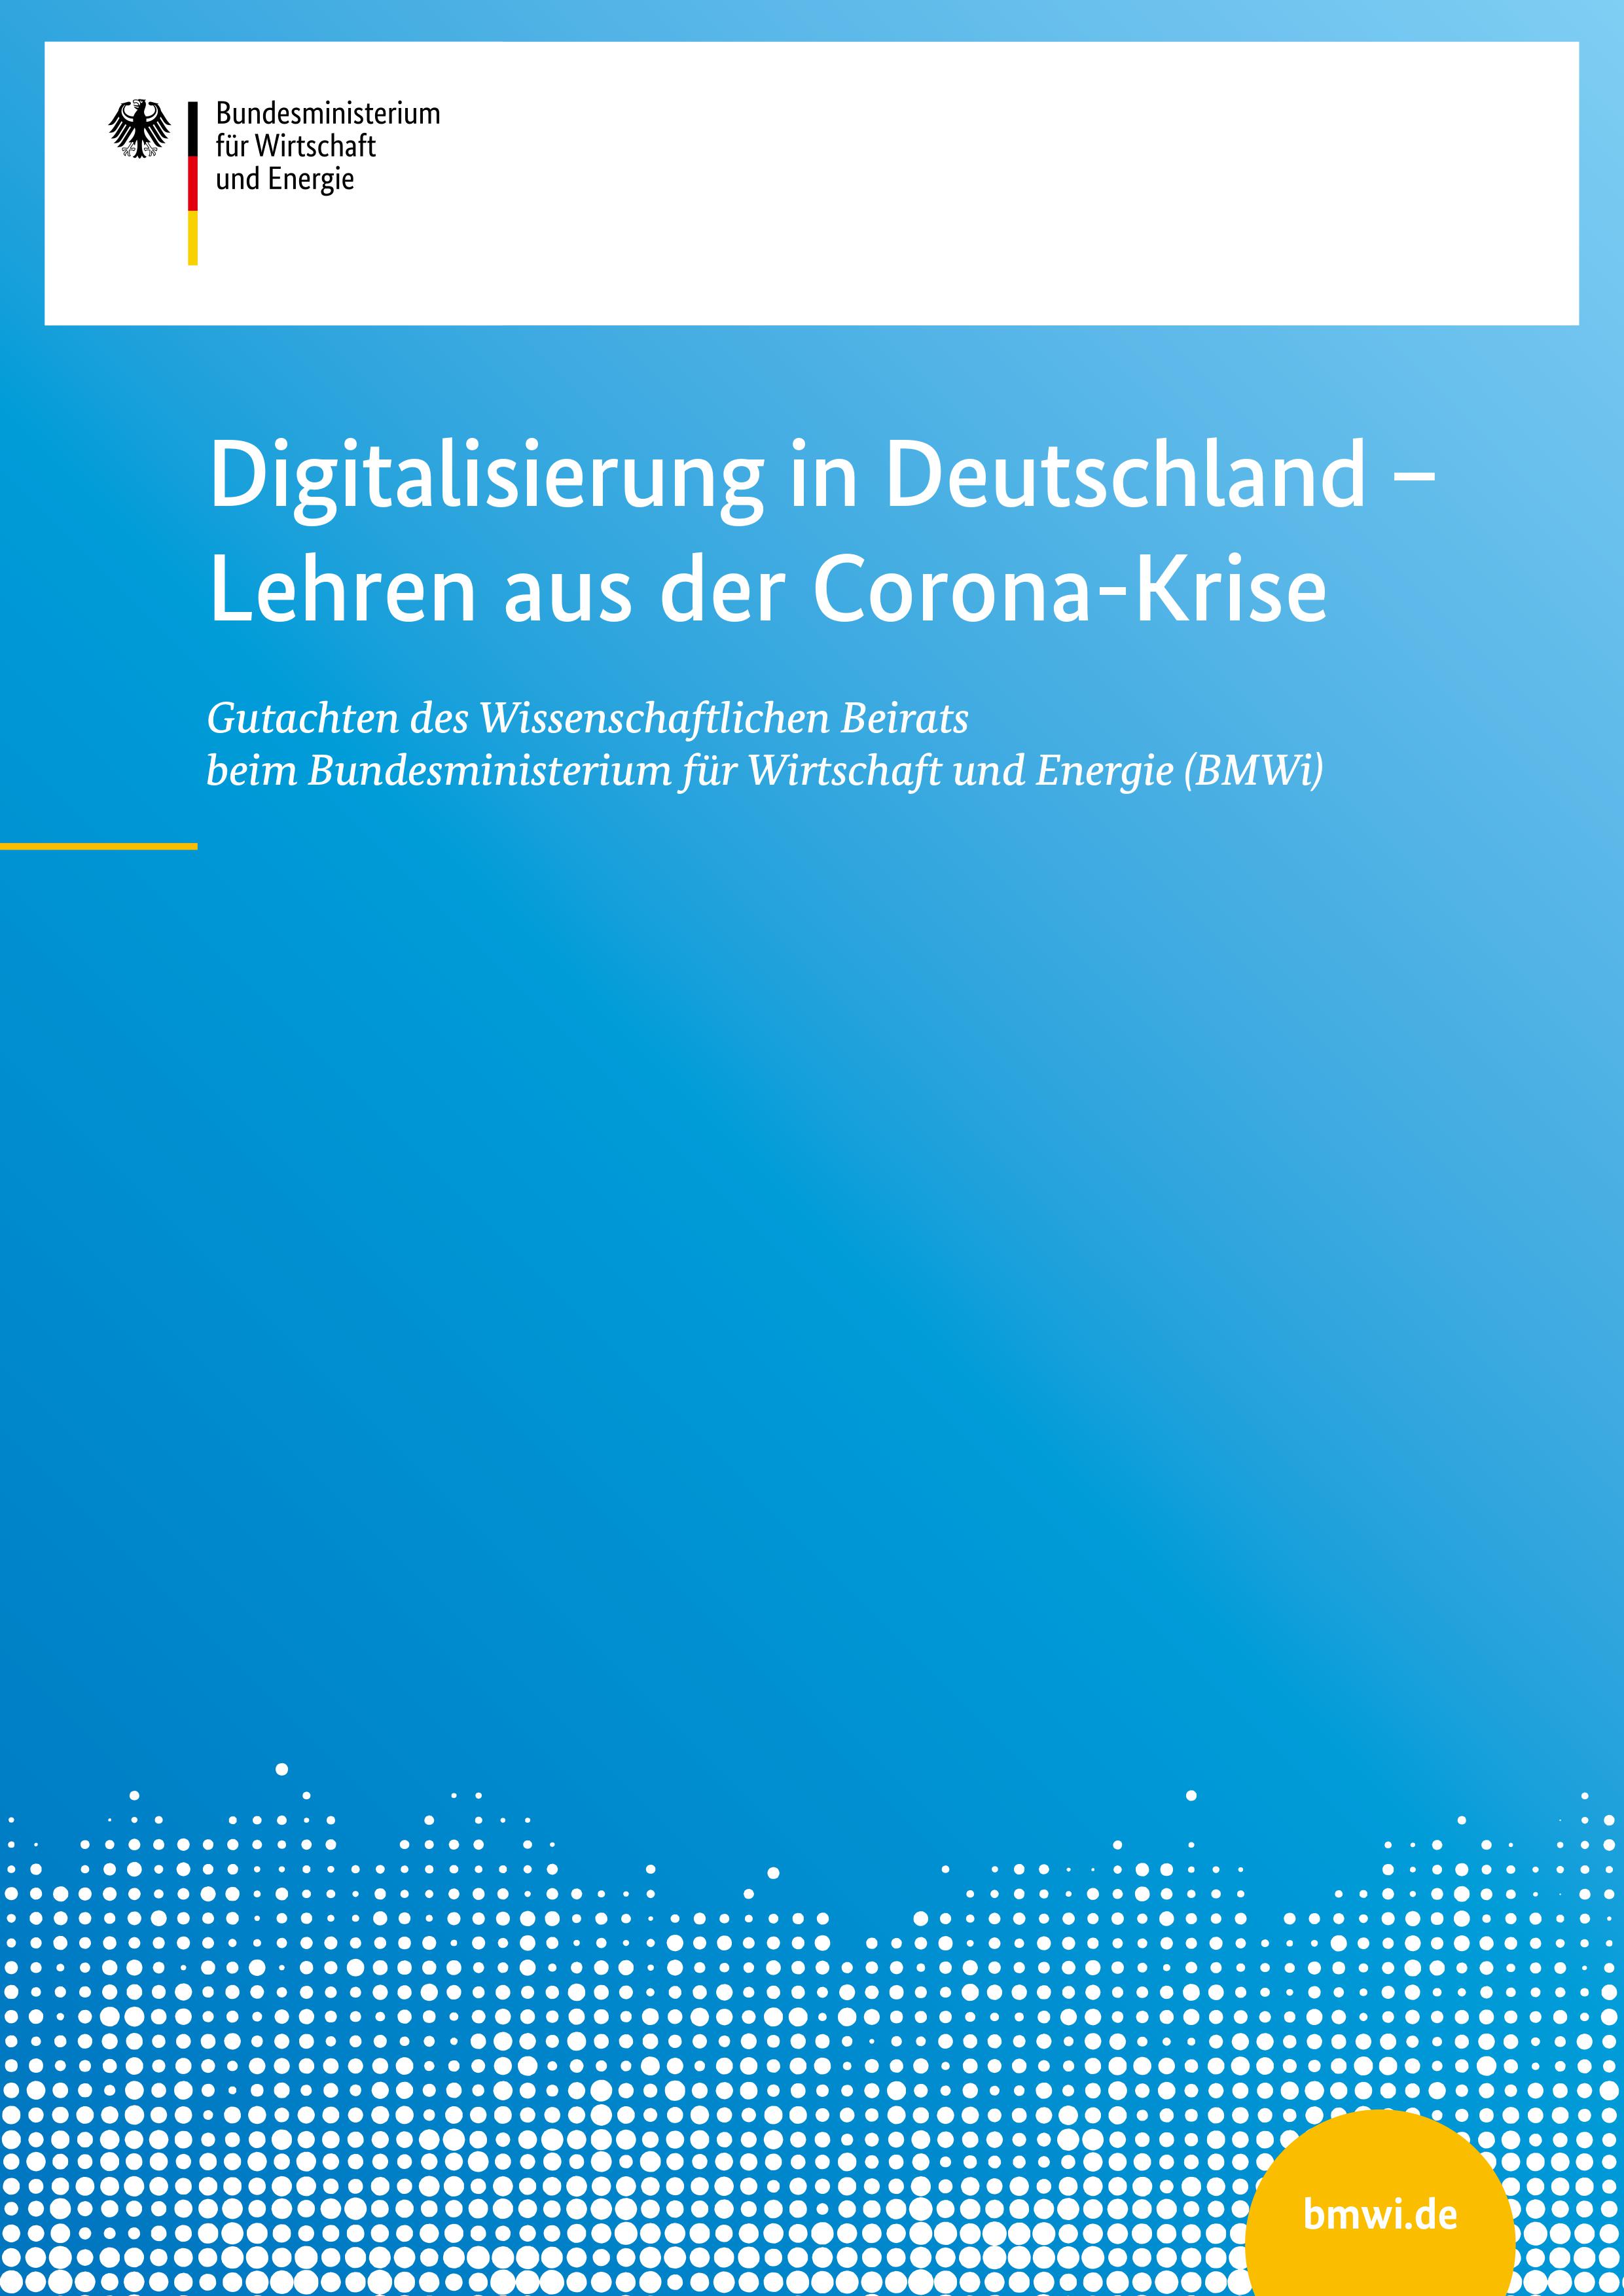 Cover des Gutachtens "Digitalisierung in Deutschland - Lehren aus der Corona-Krise"